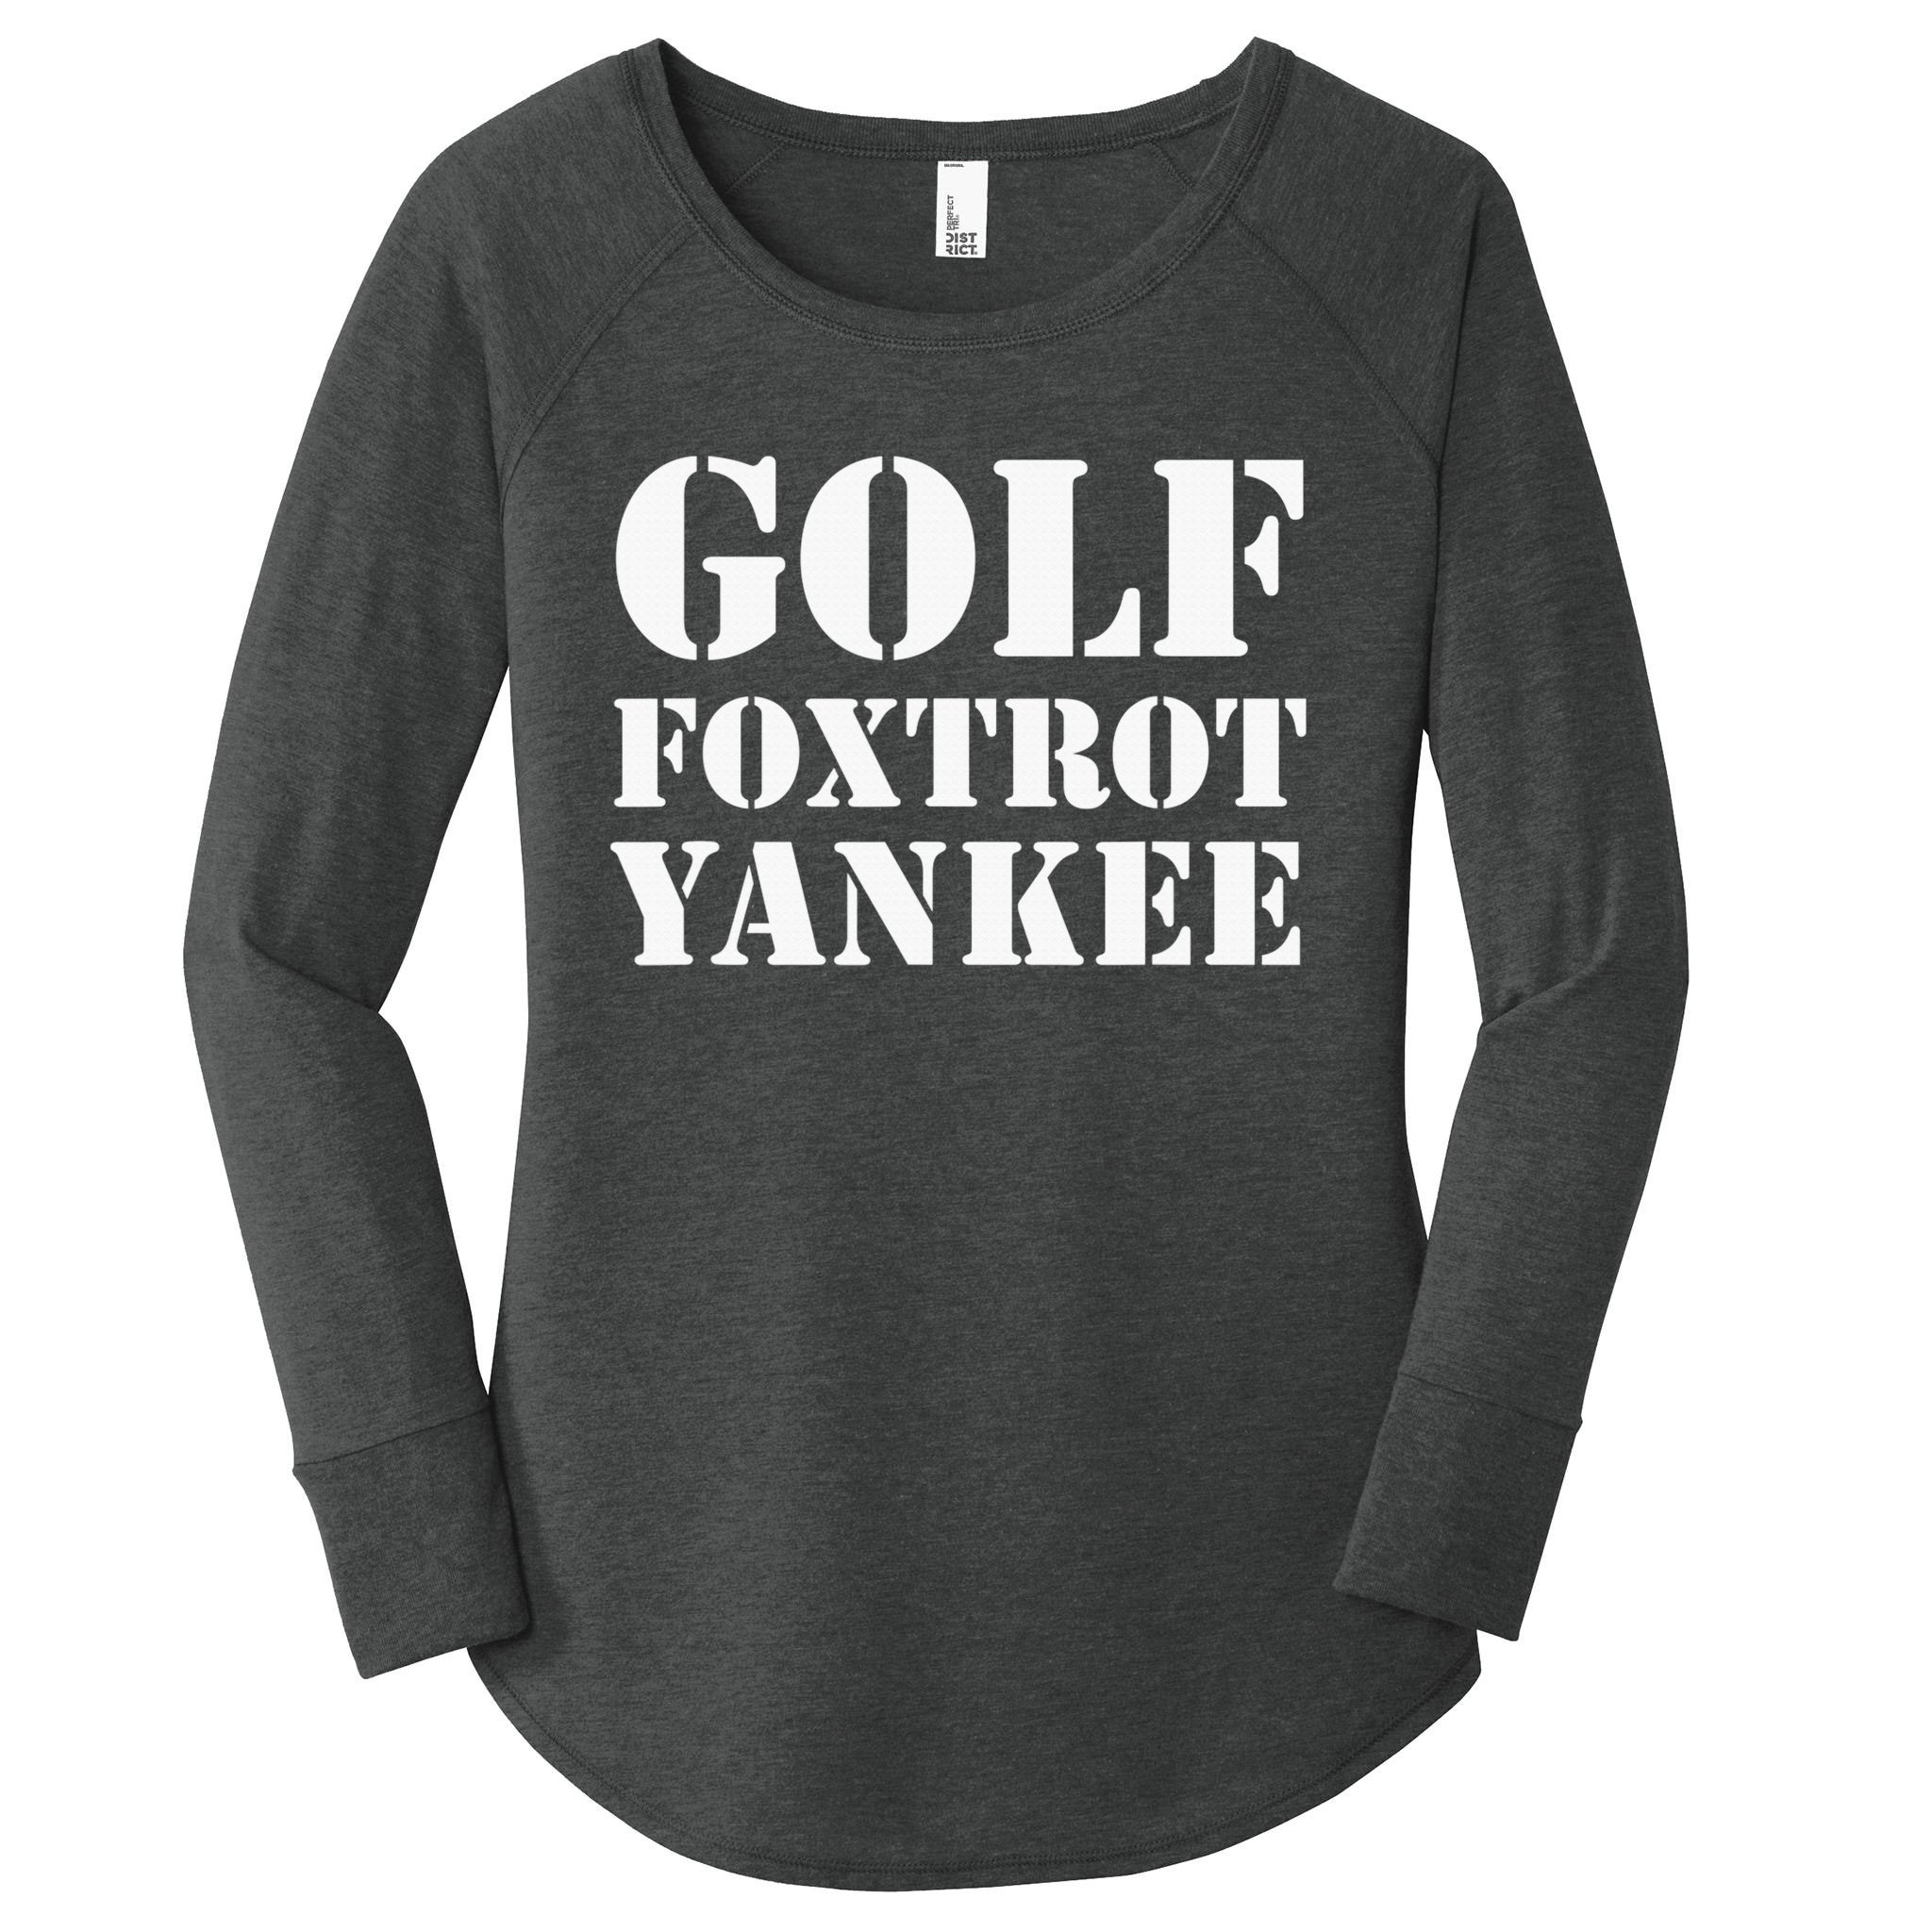 yankees golf shirt